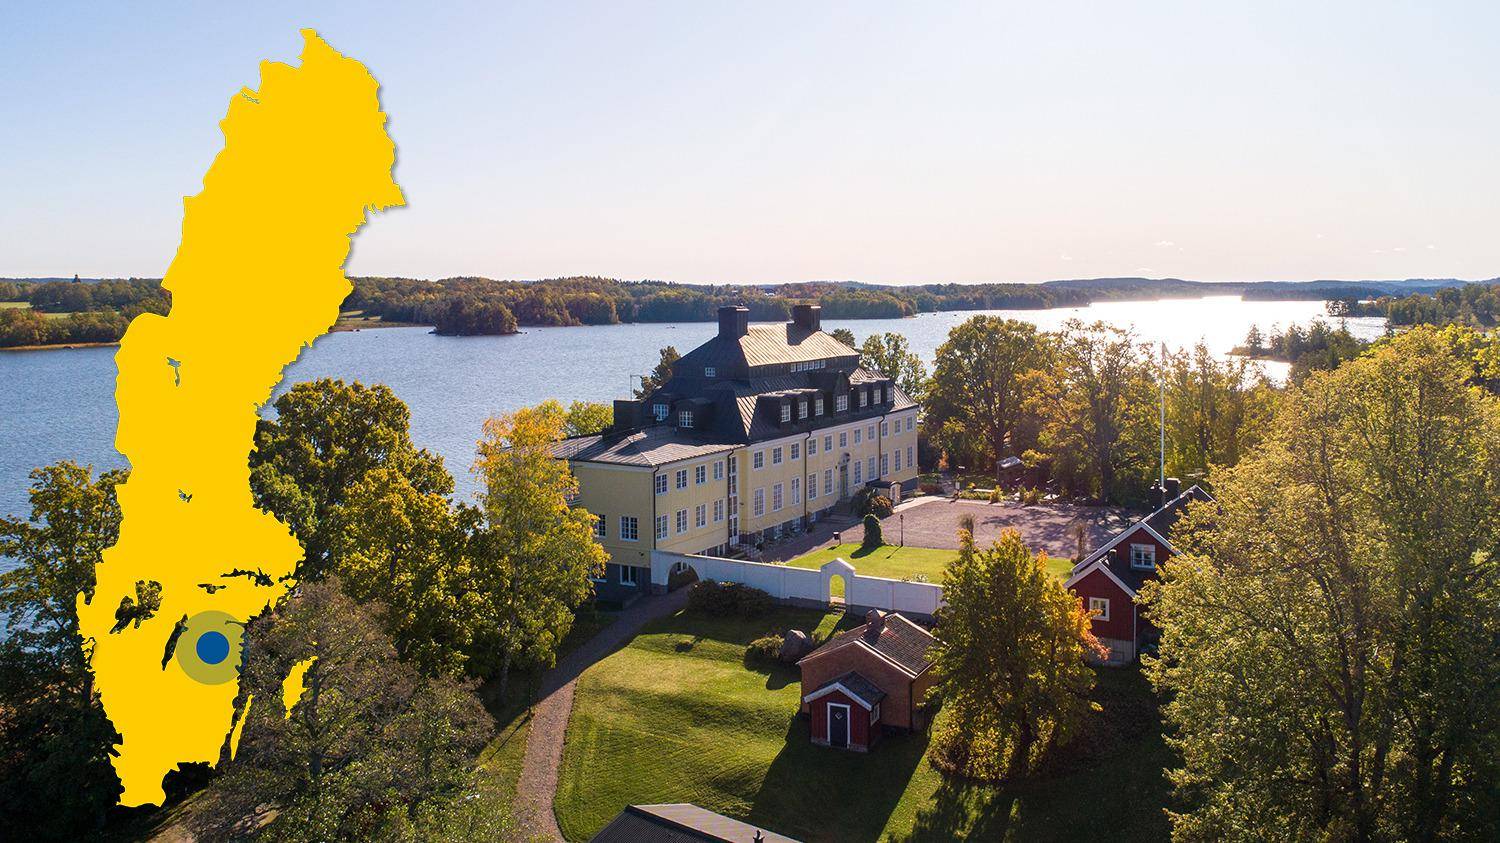 Ein Herrenhaus mit gelber Fassade liegt auf einem Hügel mit Blick auf das Wasser. Auf dem Bild ist eine gelbe Karte von Schweden mit einer Markierung, die Rimforsa zeigt.